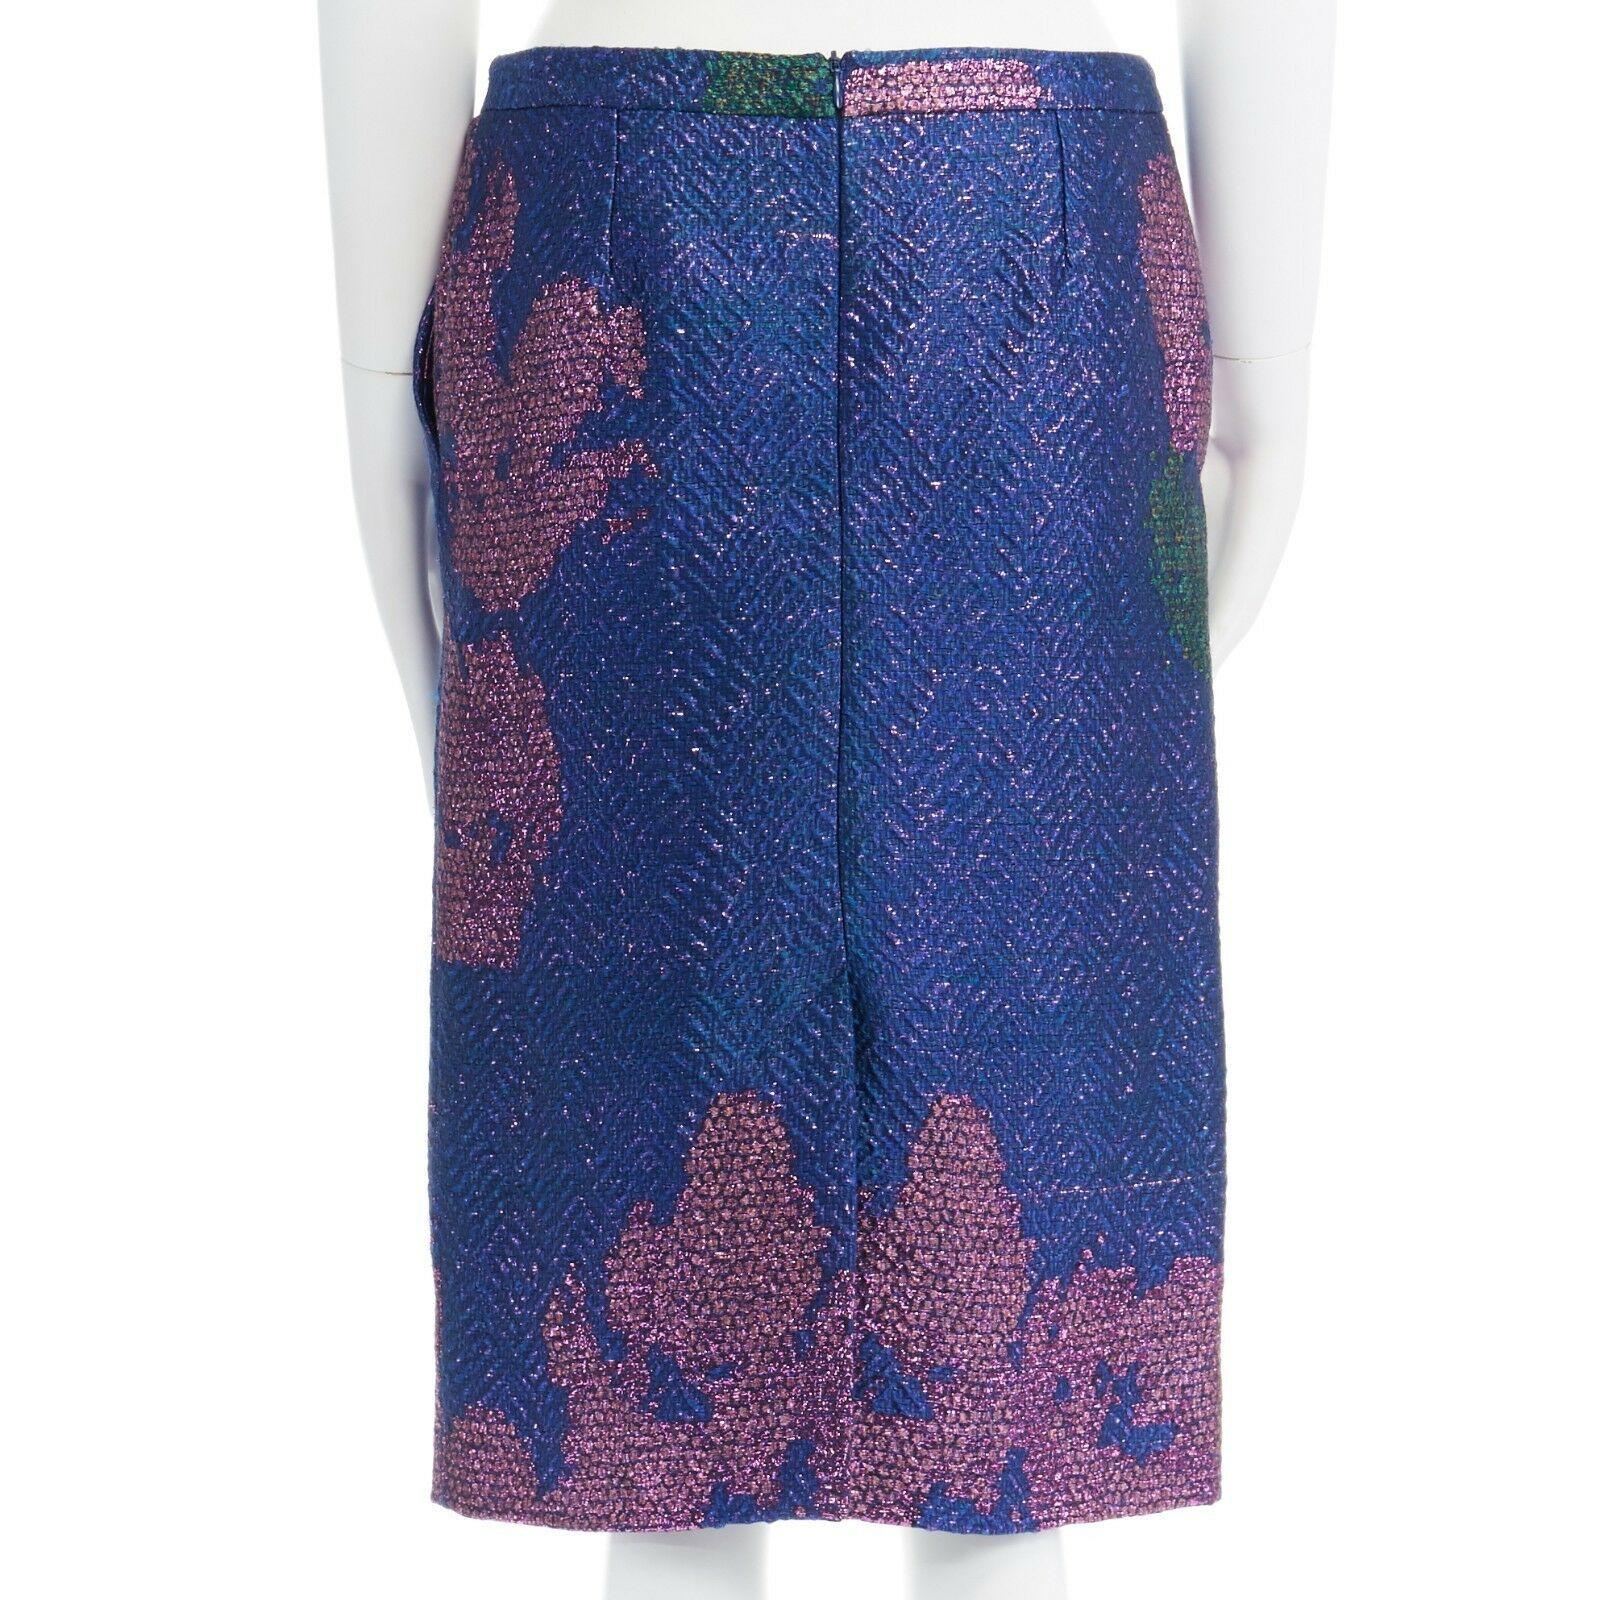 new DRIES VAN NOTEN SS15 metallic blue pink floral chevron pencil skirt FR36 28